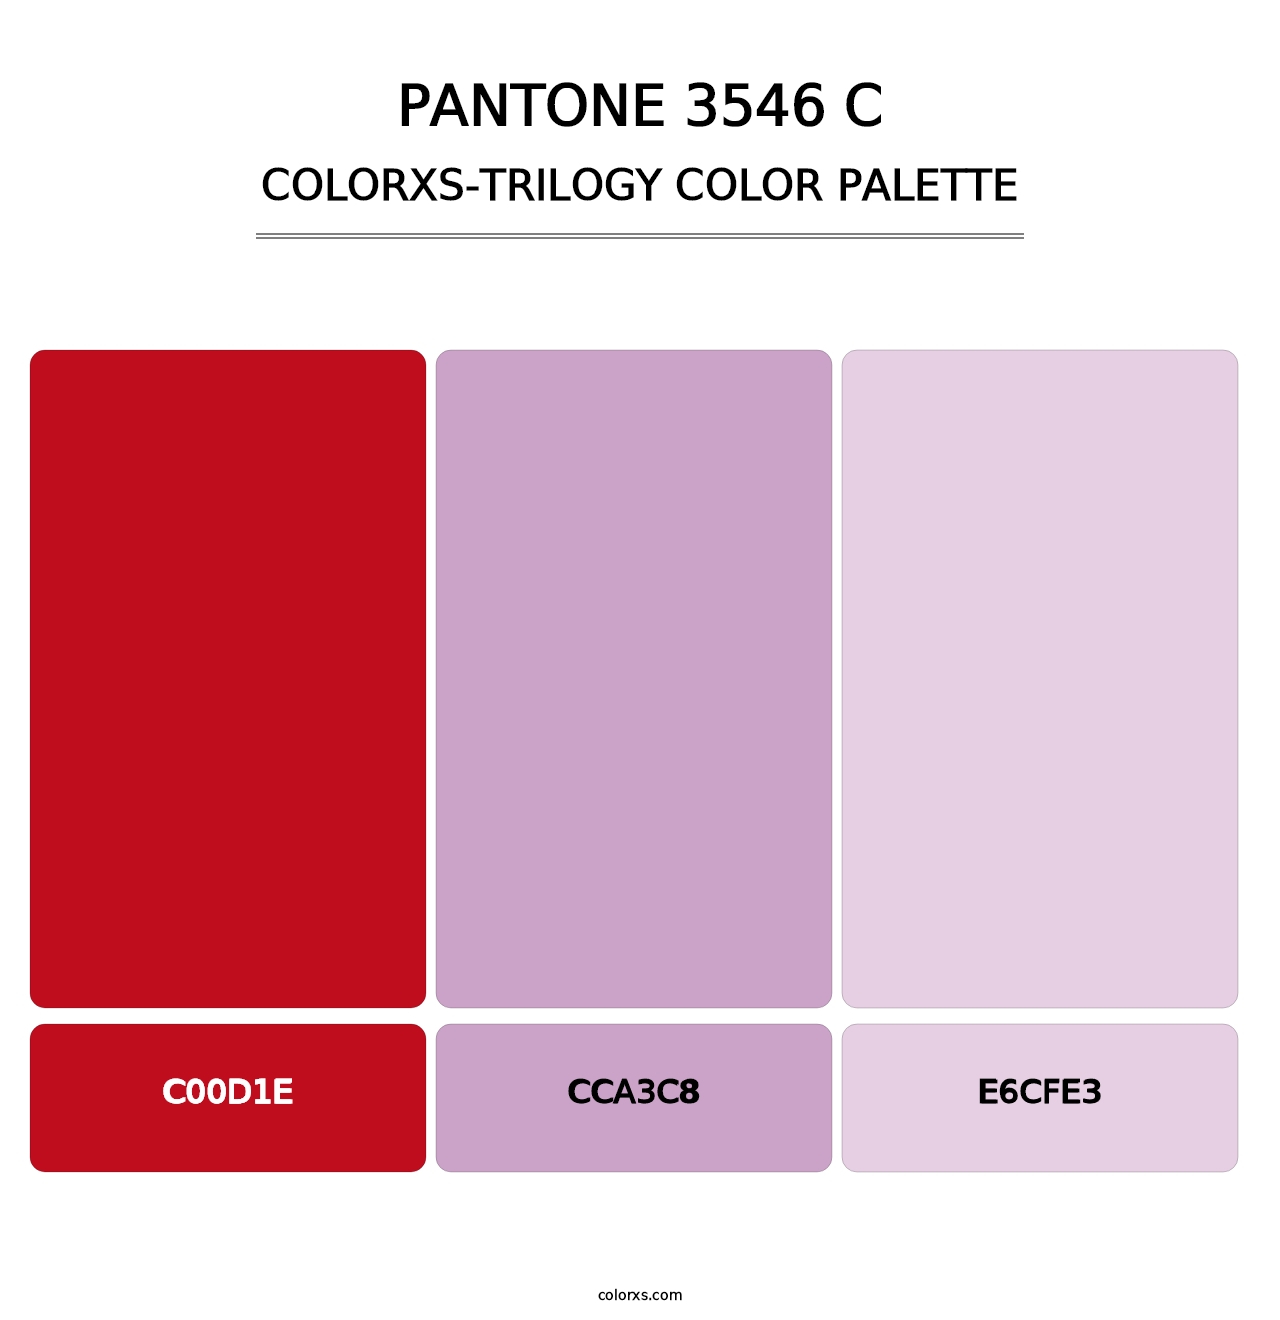 PANTONE 3546 C - Colorxs Trilogy Palette